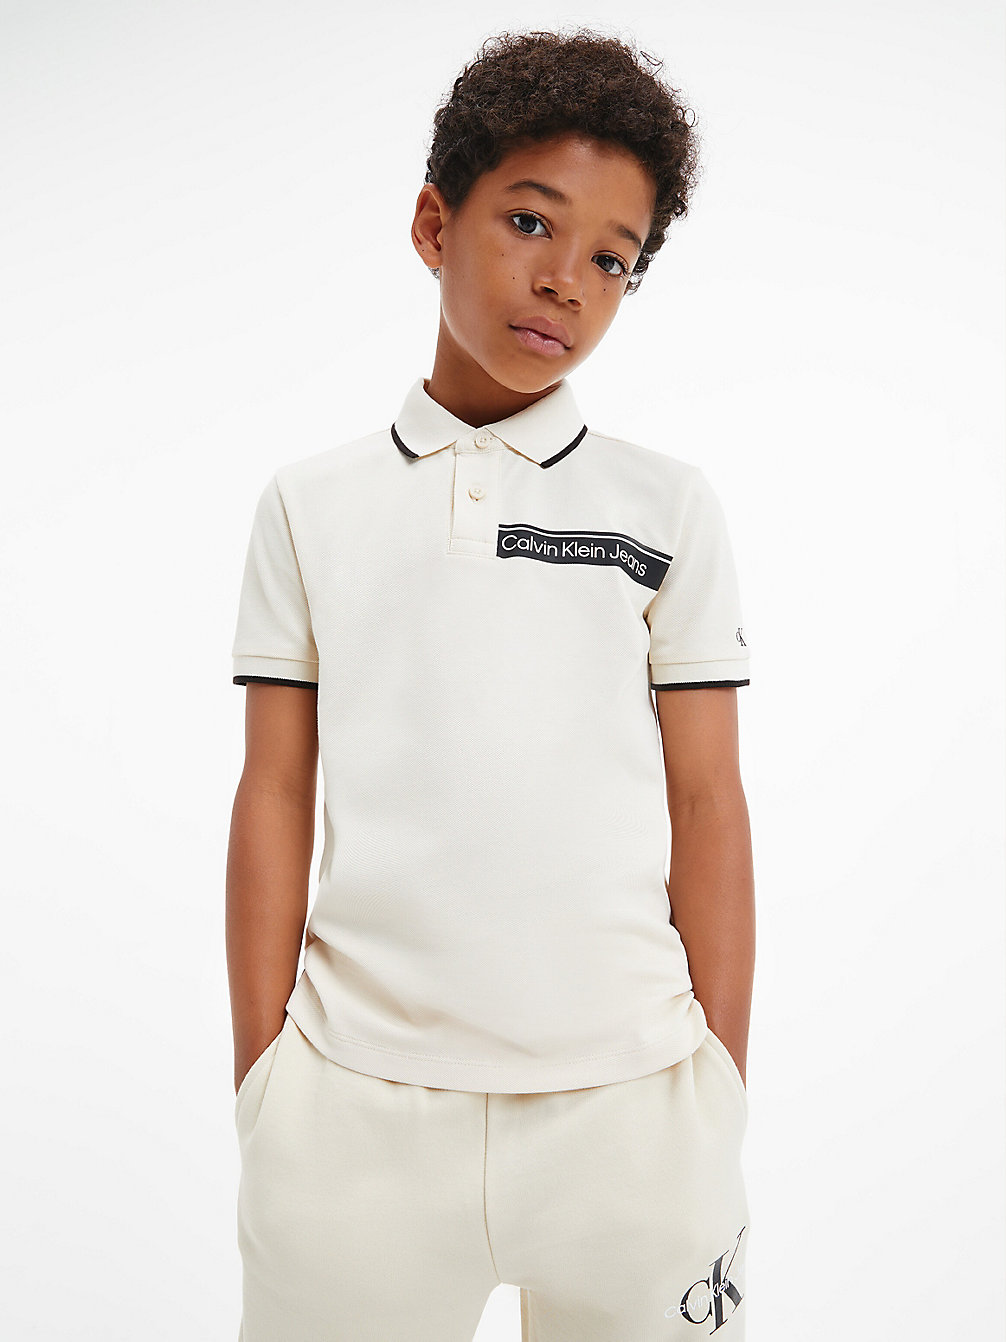 MUSLIN Poloshirt Mit Logo undefined Jungen Calvin Klein